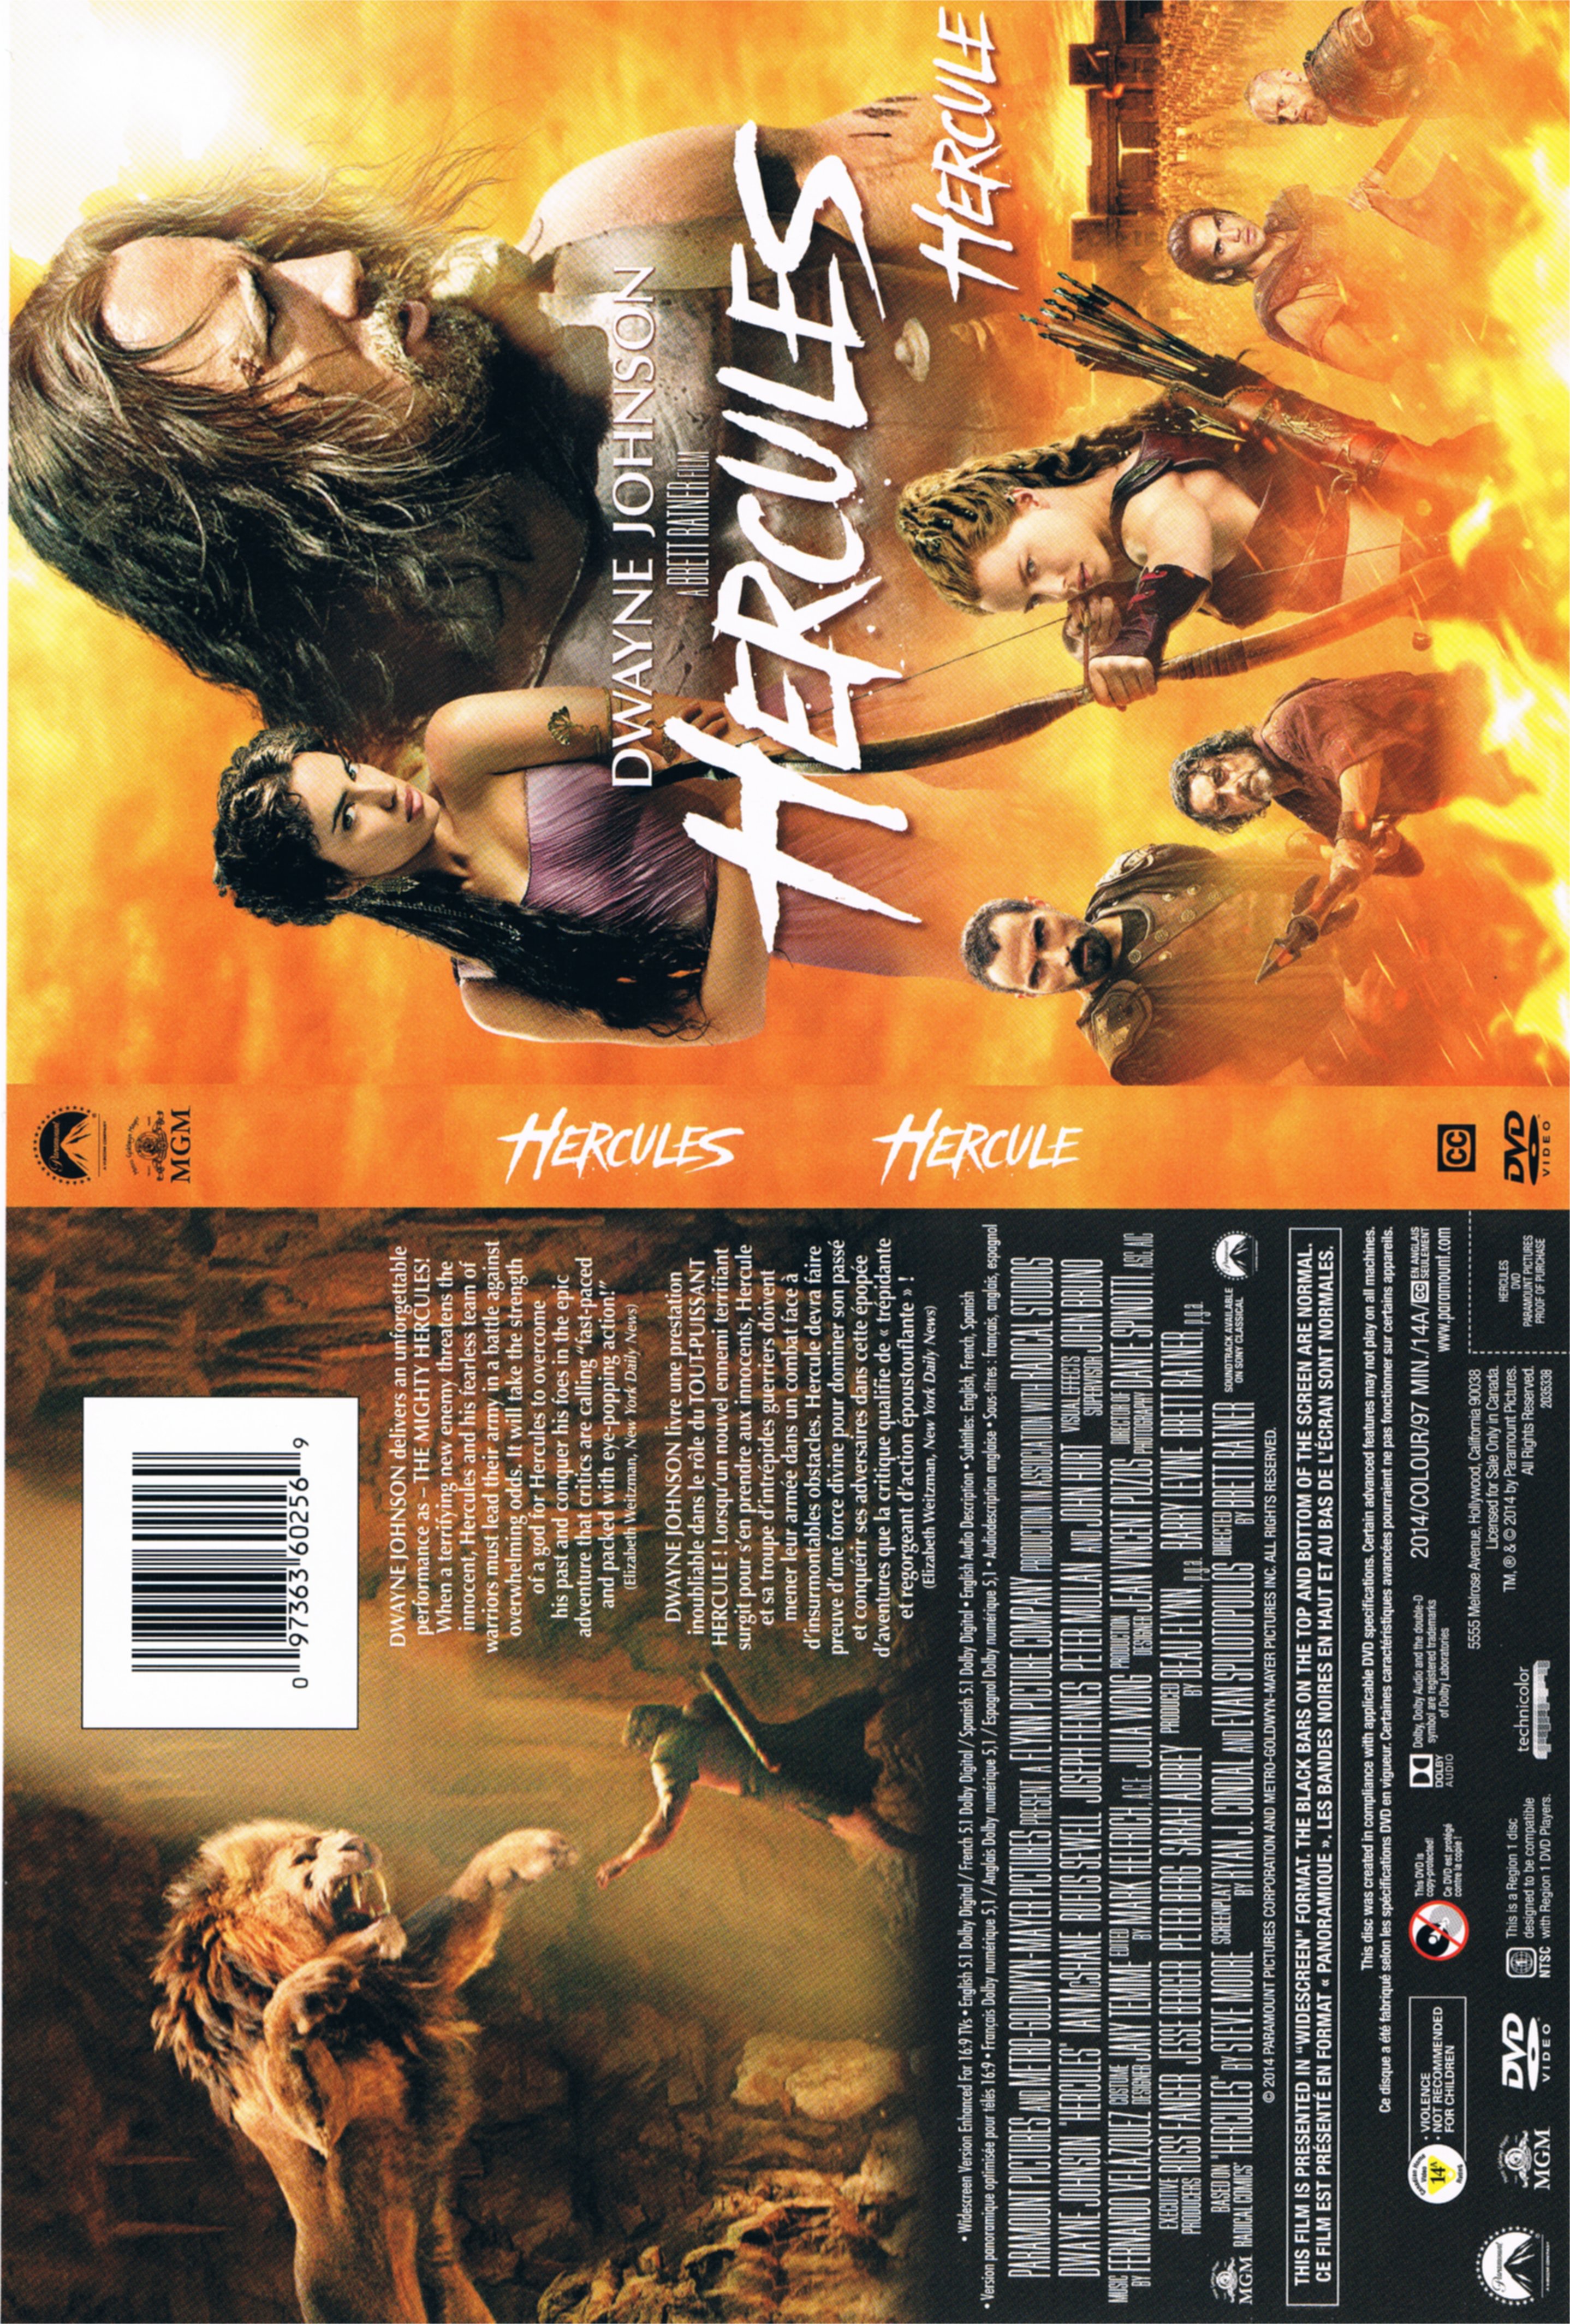 Jaquette DVD Hercule - Hercules (Canadienne)